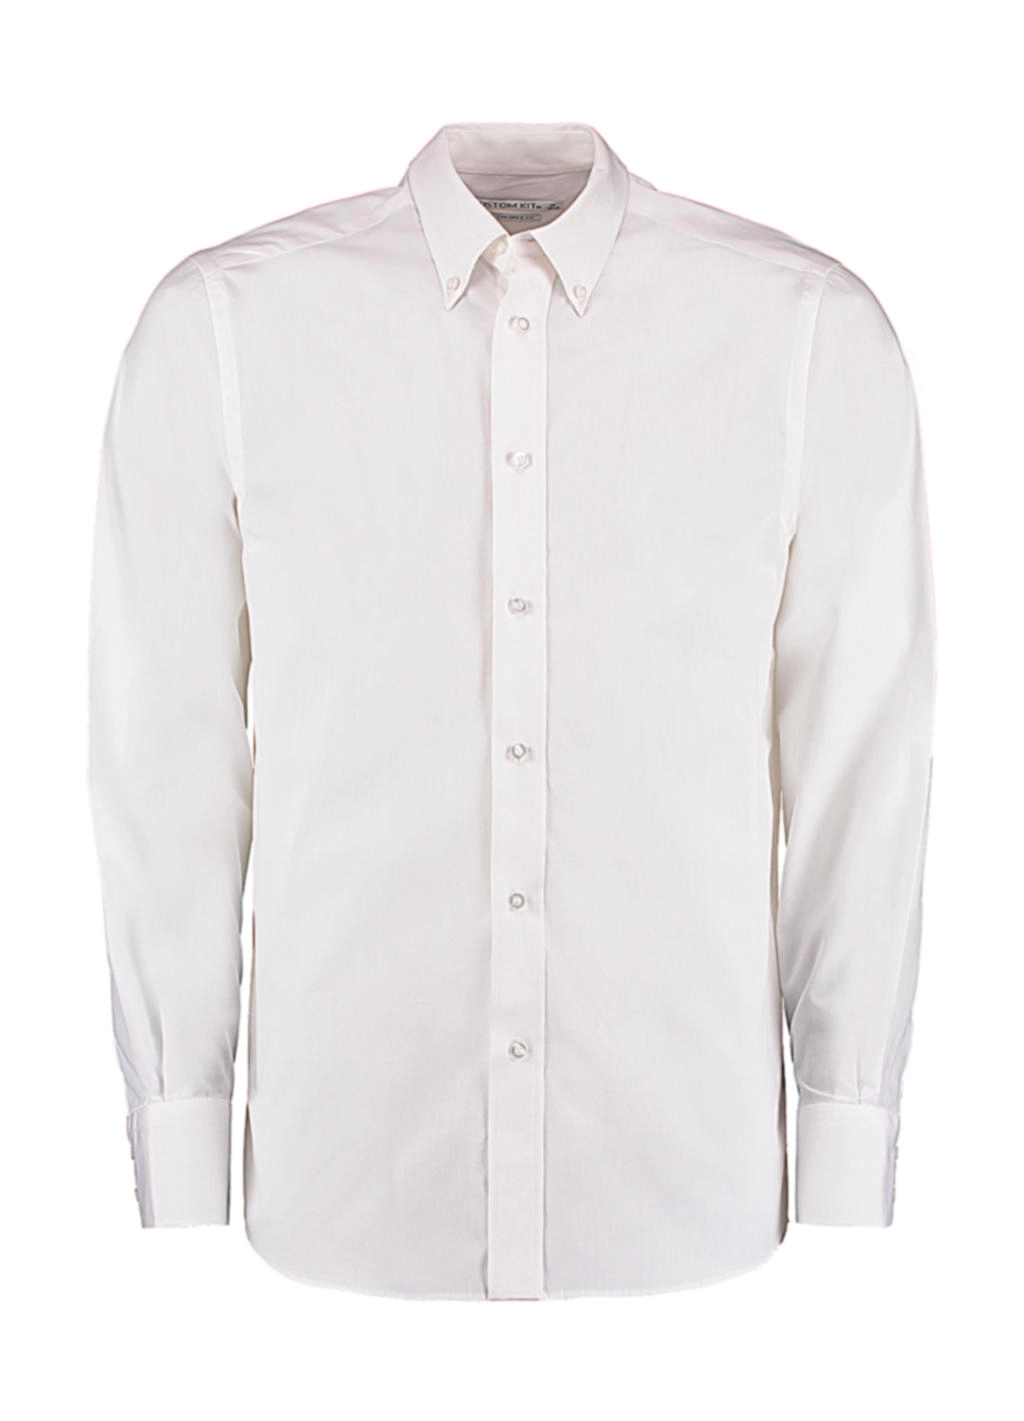 Tailored Fit City Shirt zum Besticken und Bedrucken in der Farbe White mit Ihren Logo, Schriftzug oder Motiv.